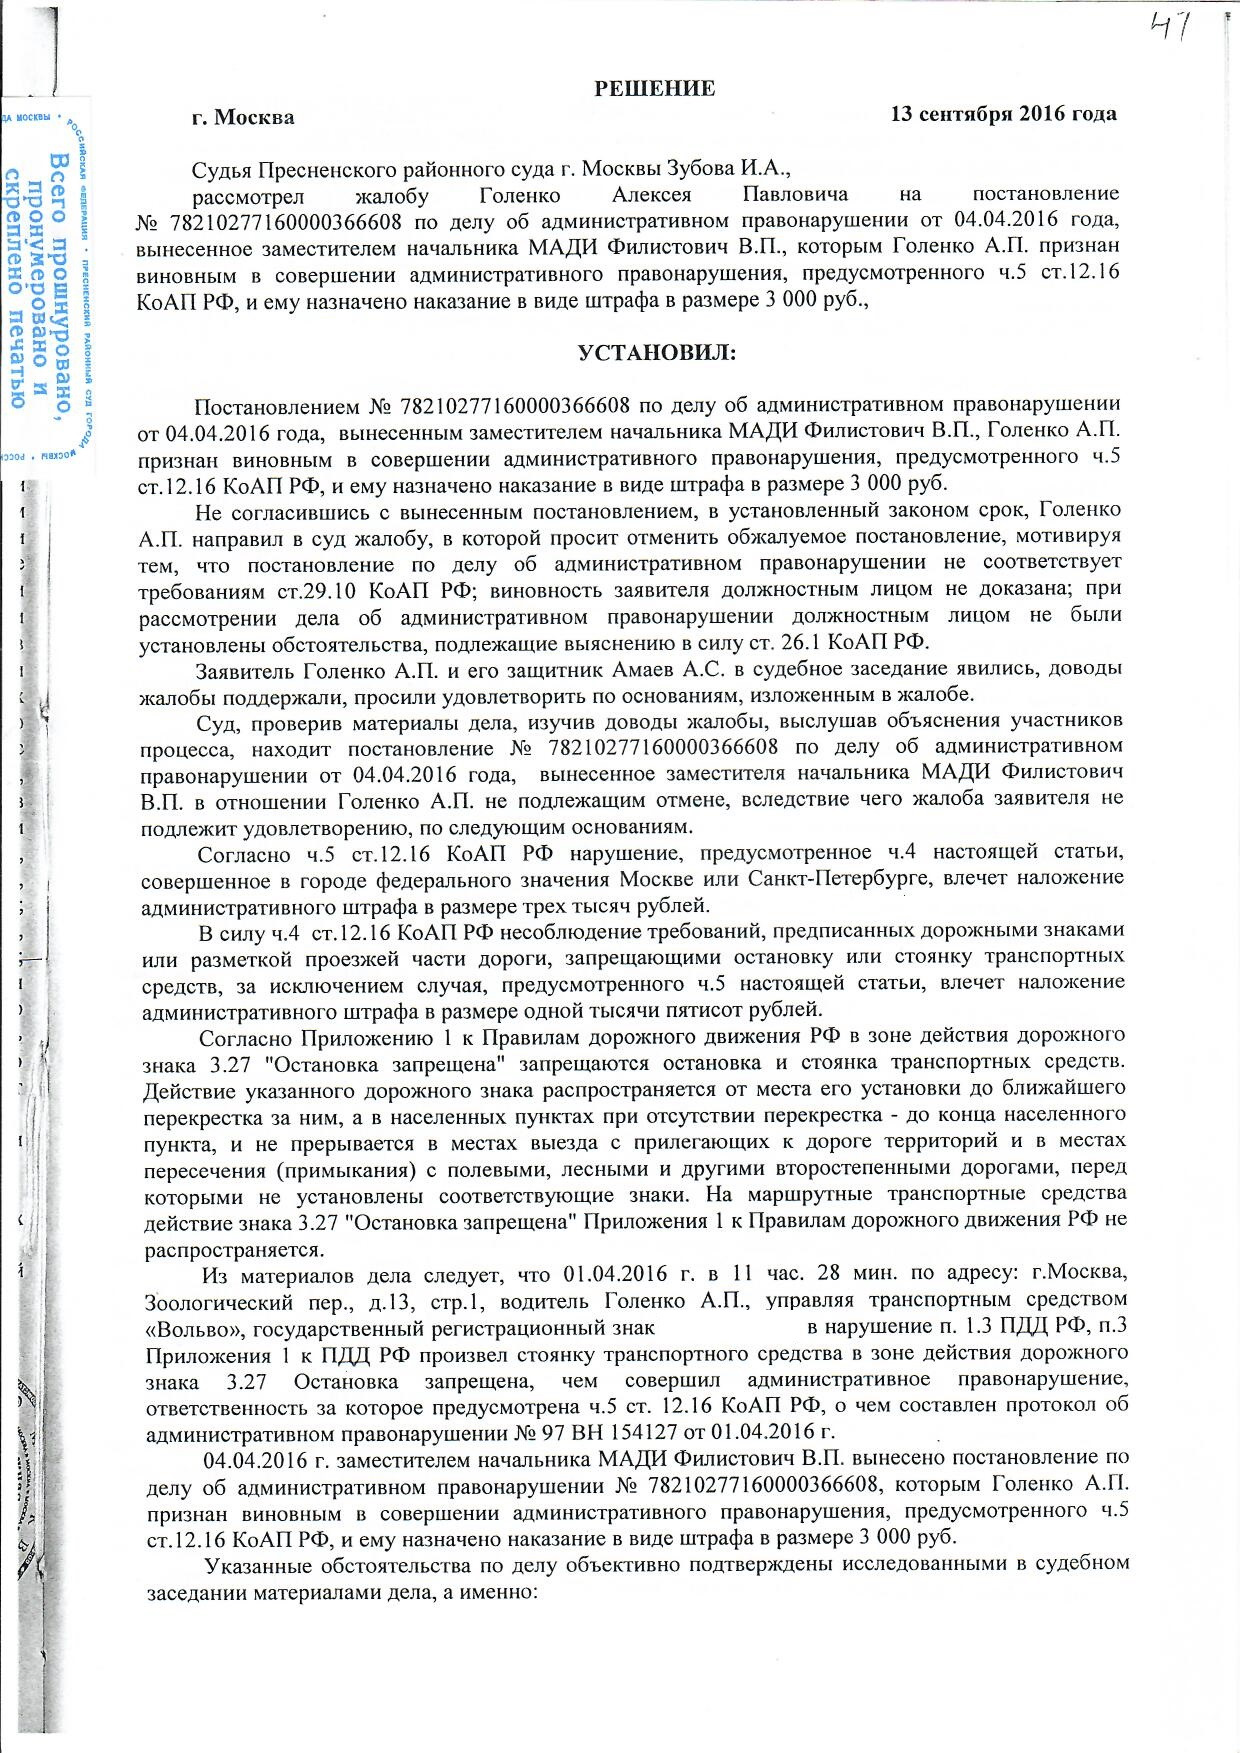 Объяснение по ст 51 Конституции РФ